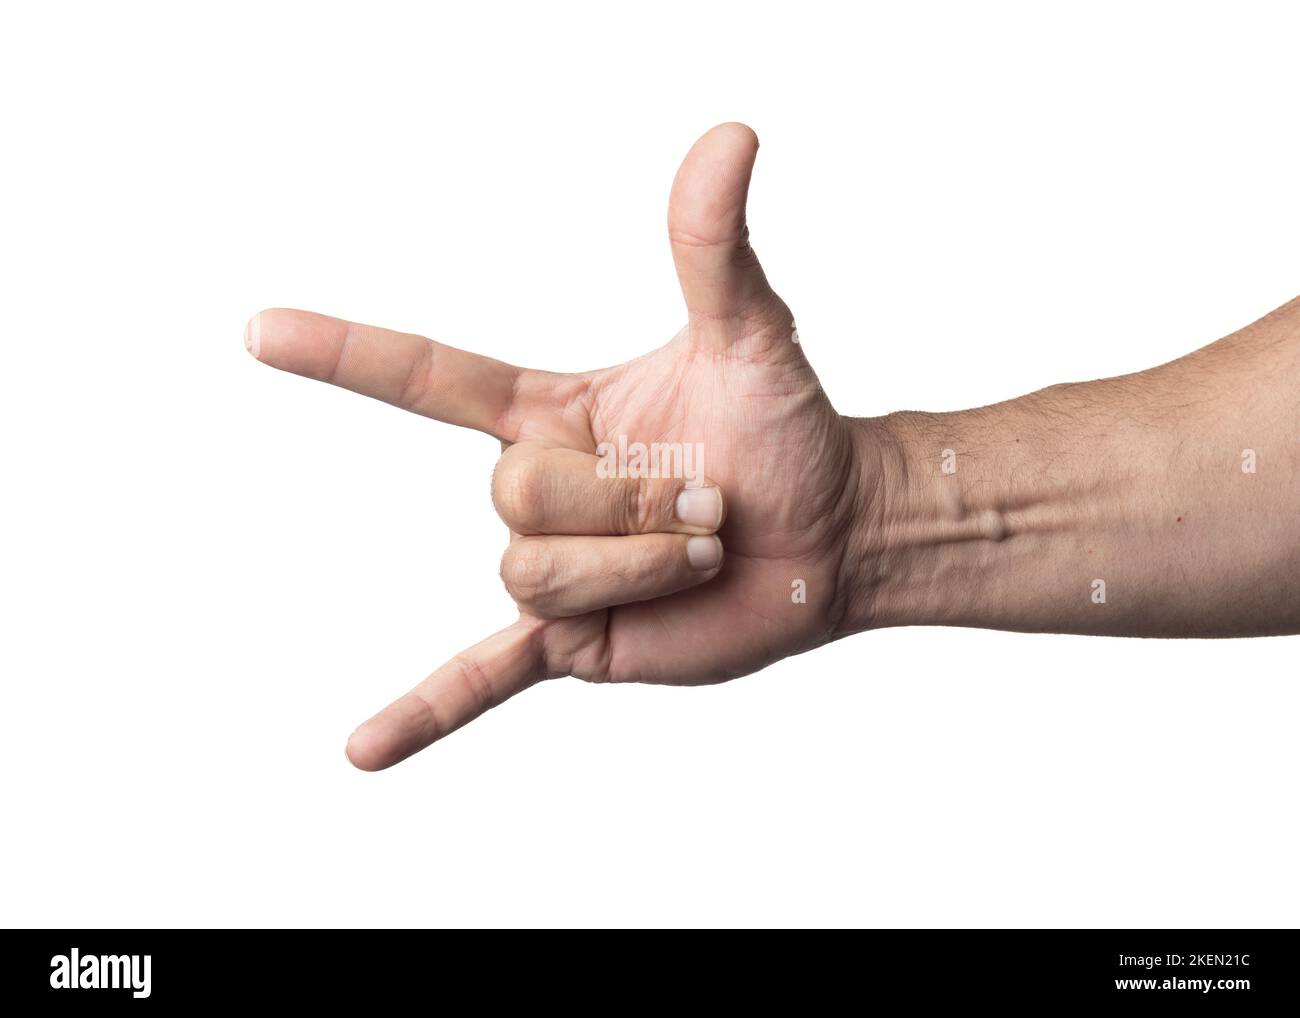 Main et bras d'un homme sur fond blanc nucléaire, montrant un geste d'approbation ou de positivité. Banque D'Images